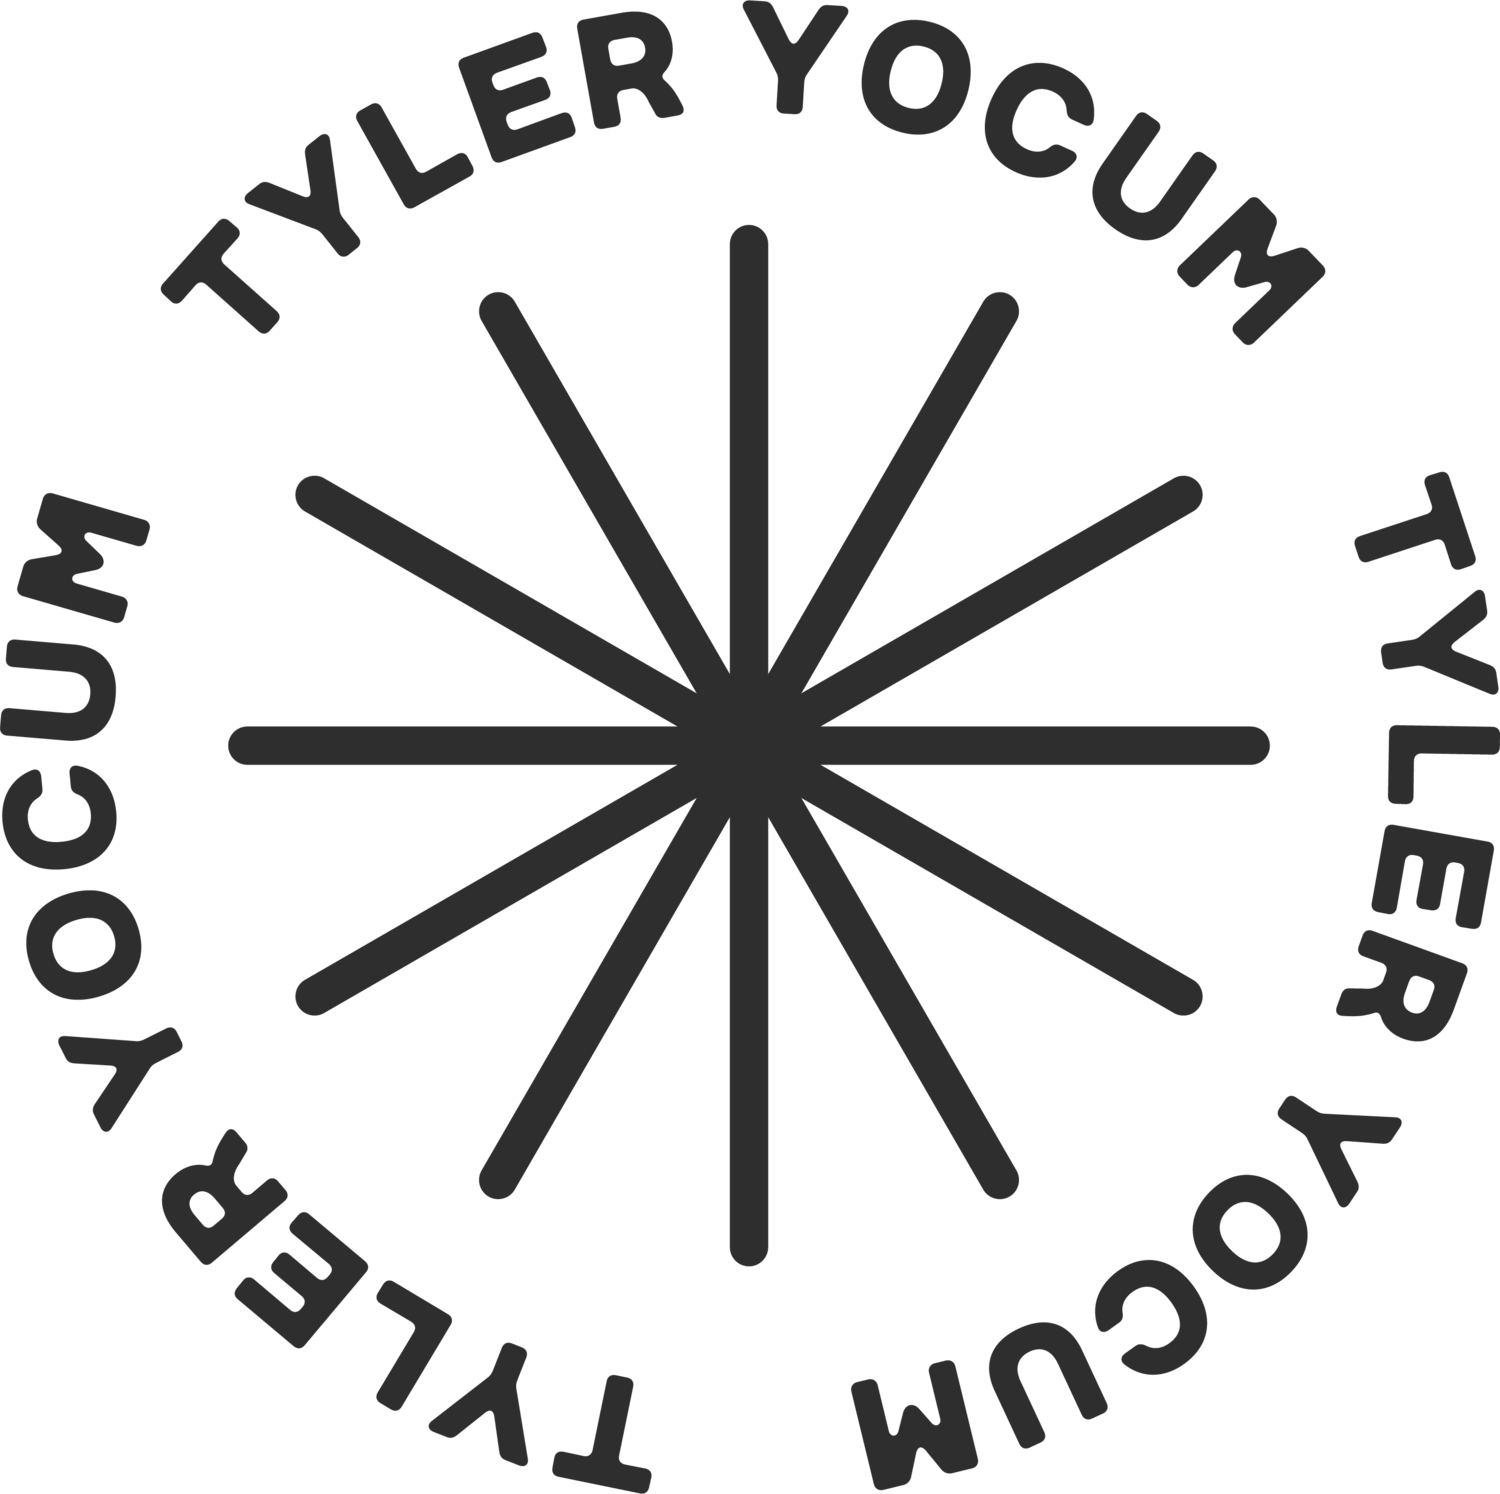 Tyler Yocum